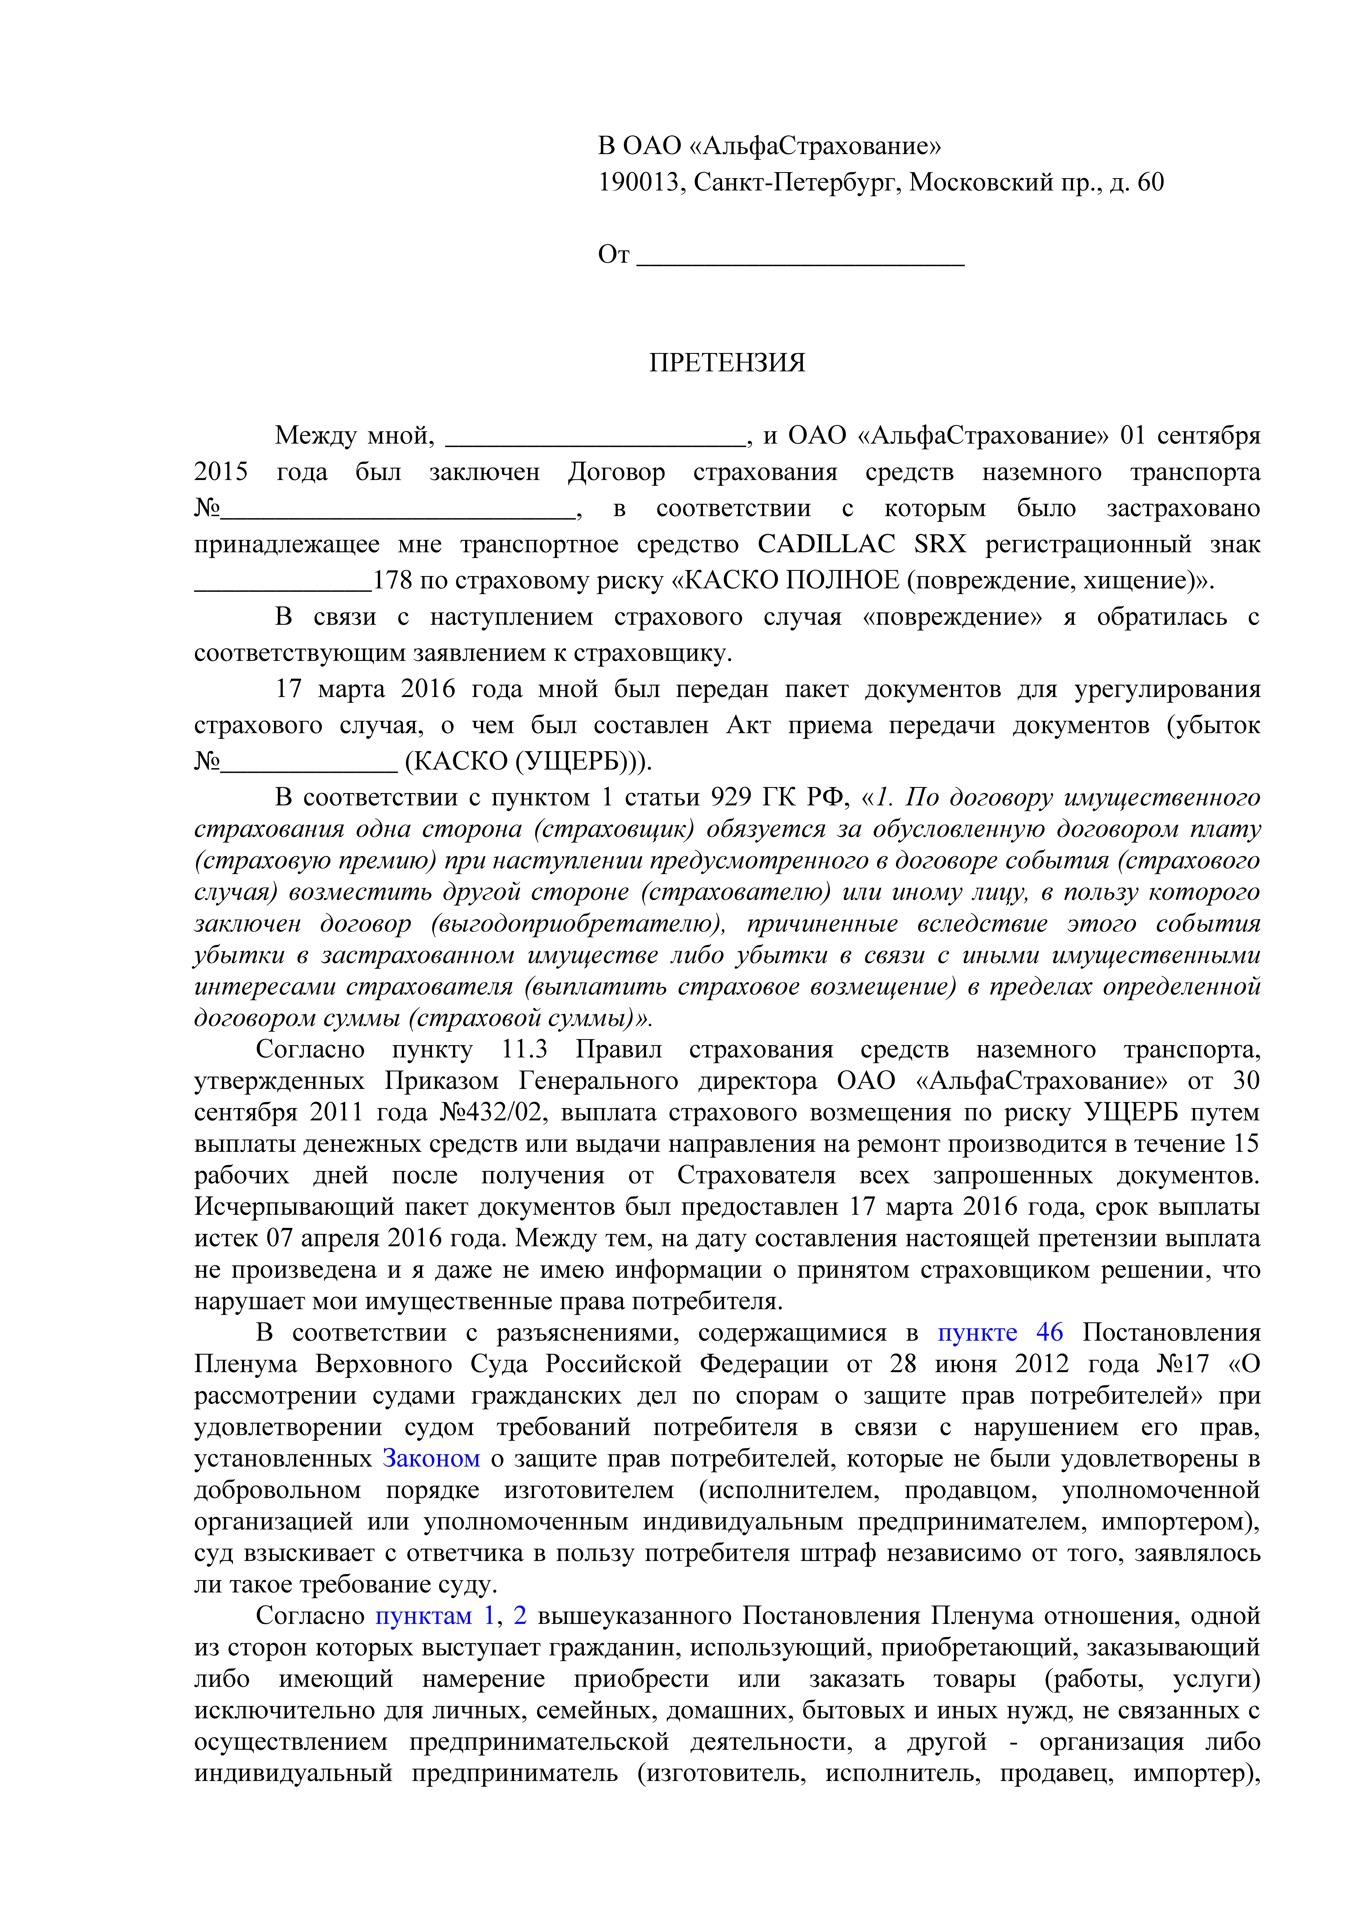 Гражданство рф в упрощенном порядке 2020 году для граждан казахстана по квоте